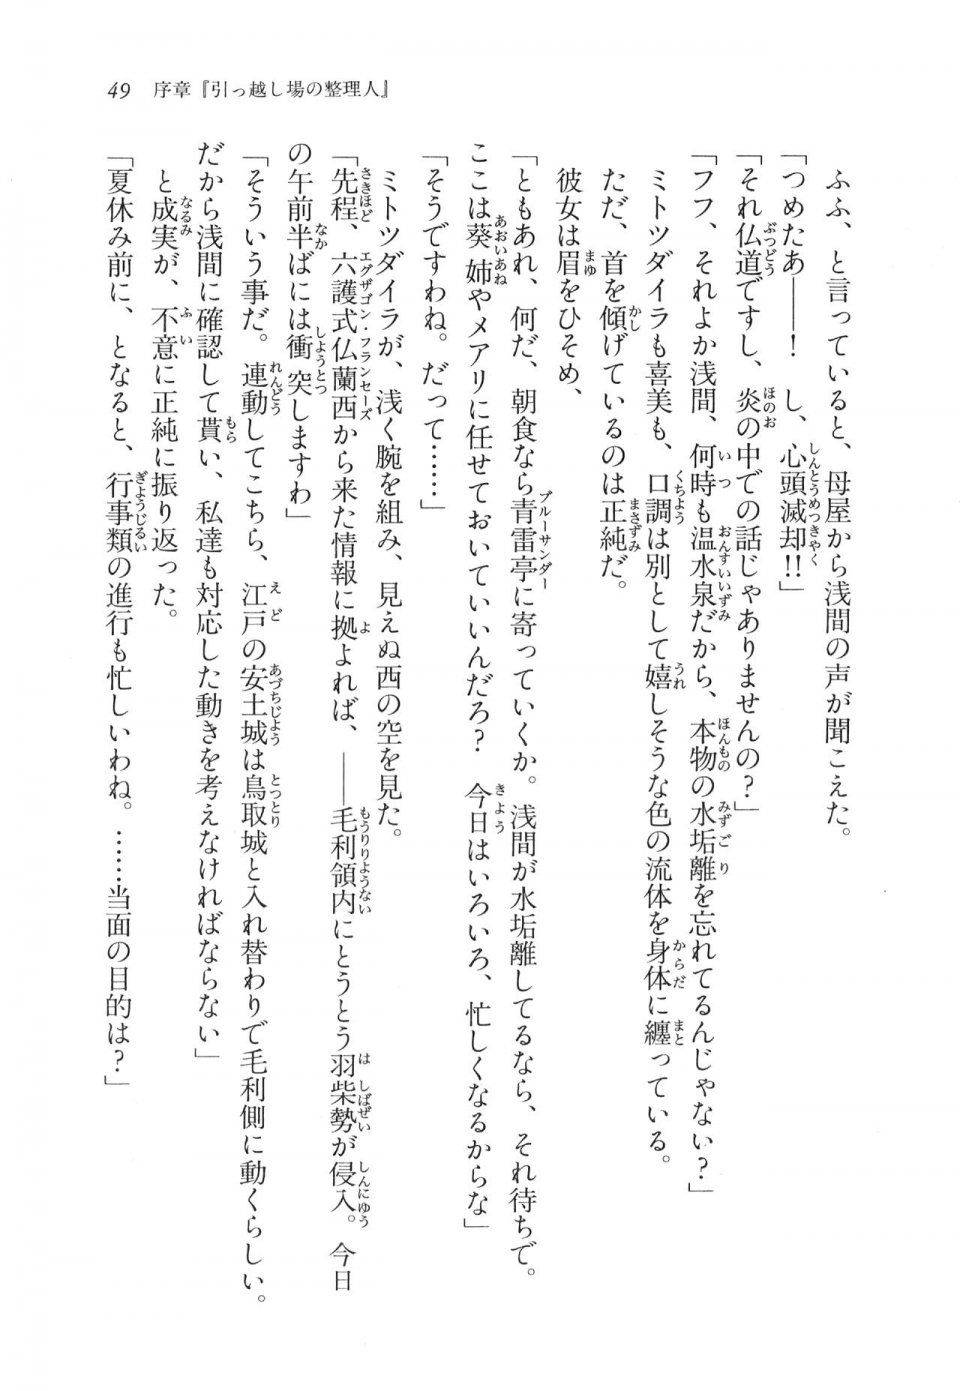 Kyoukai Senjou no Horizon LN Vol 11(5A) - Photo #50